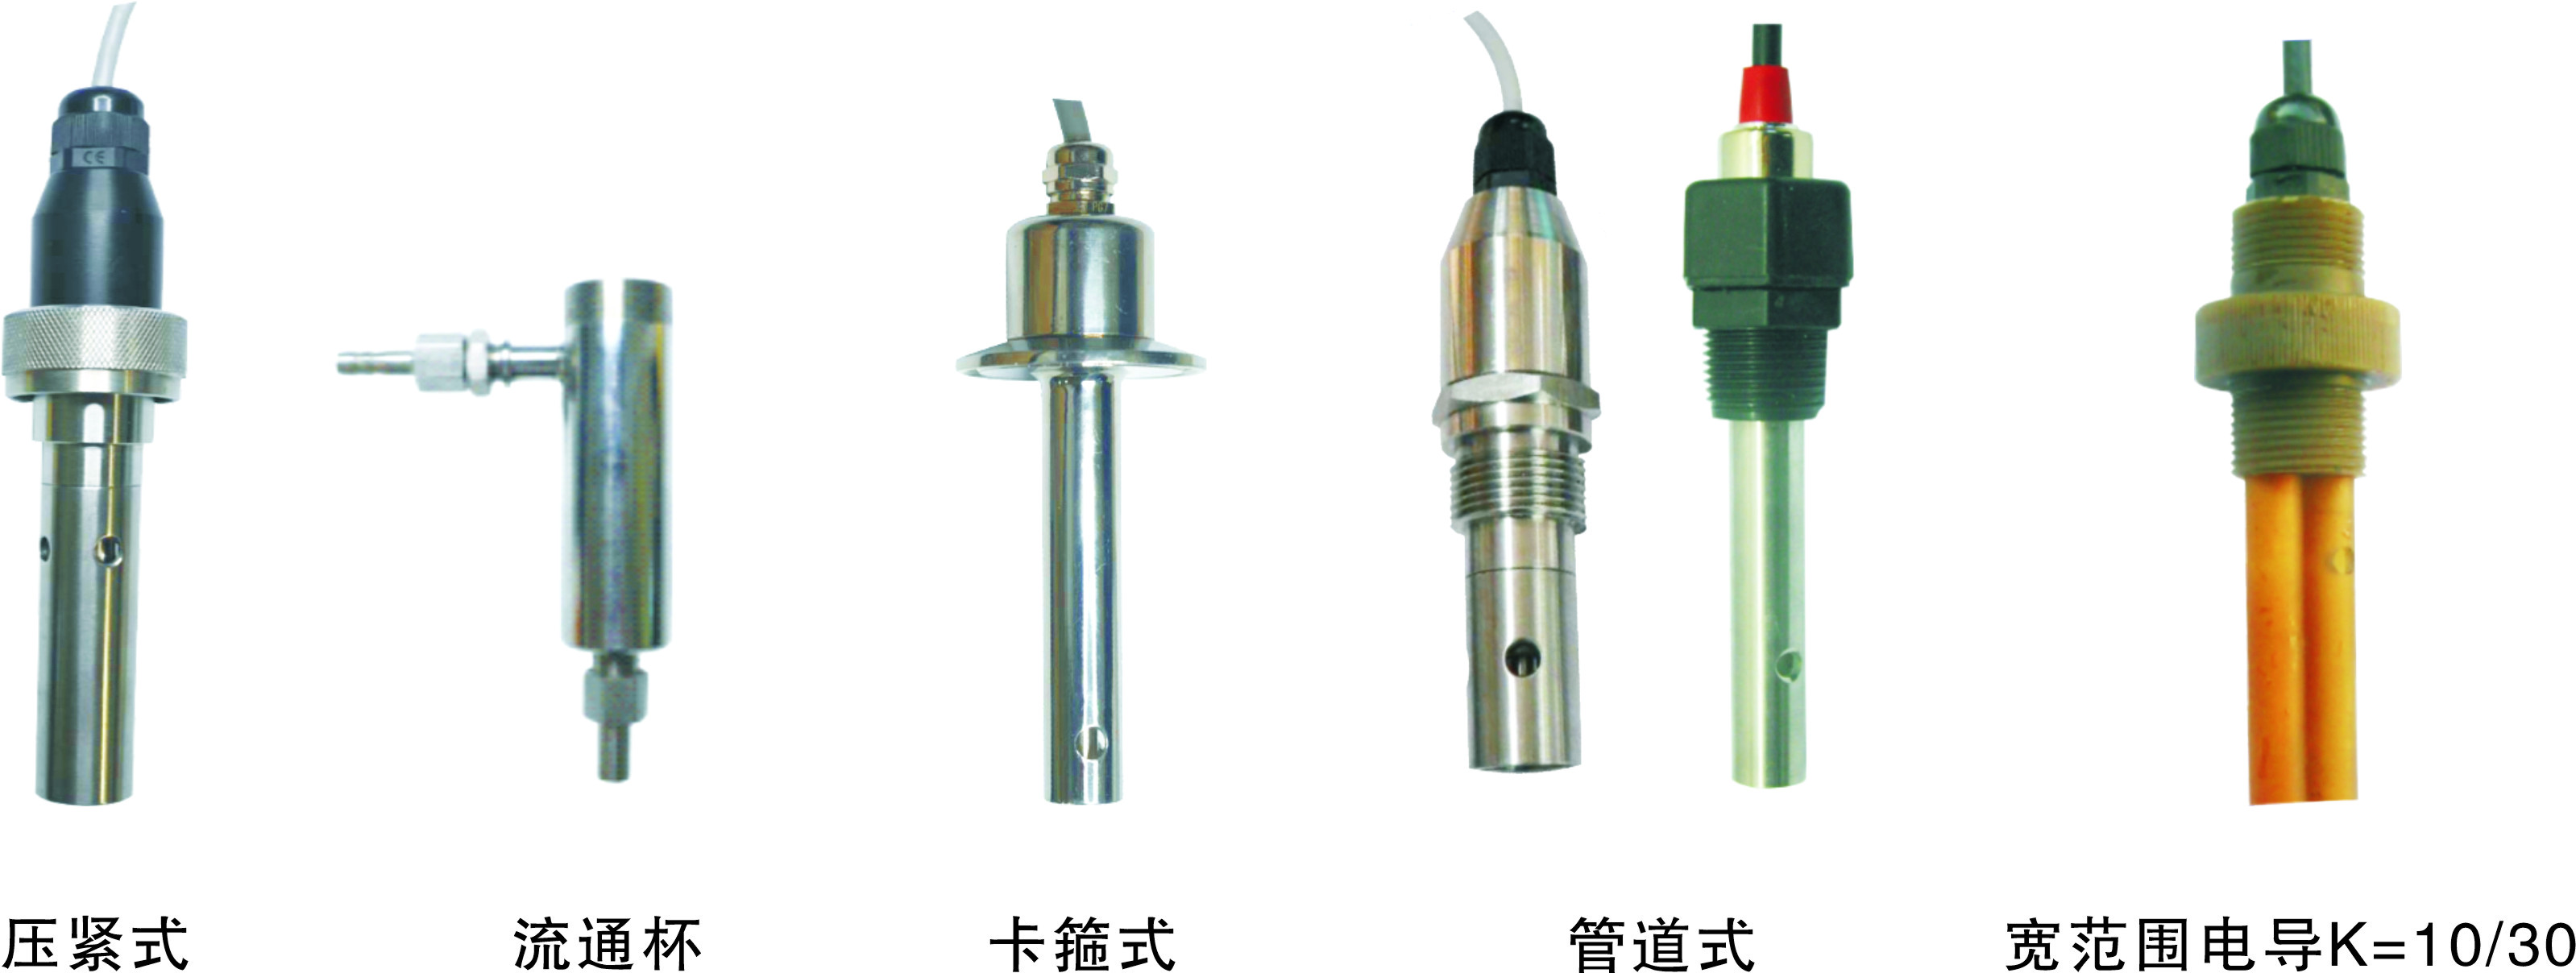 上海博取DDG-3080型工业电导率仪